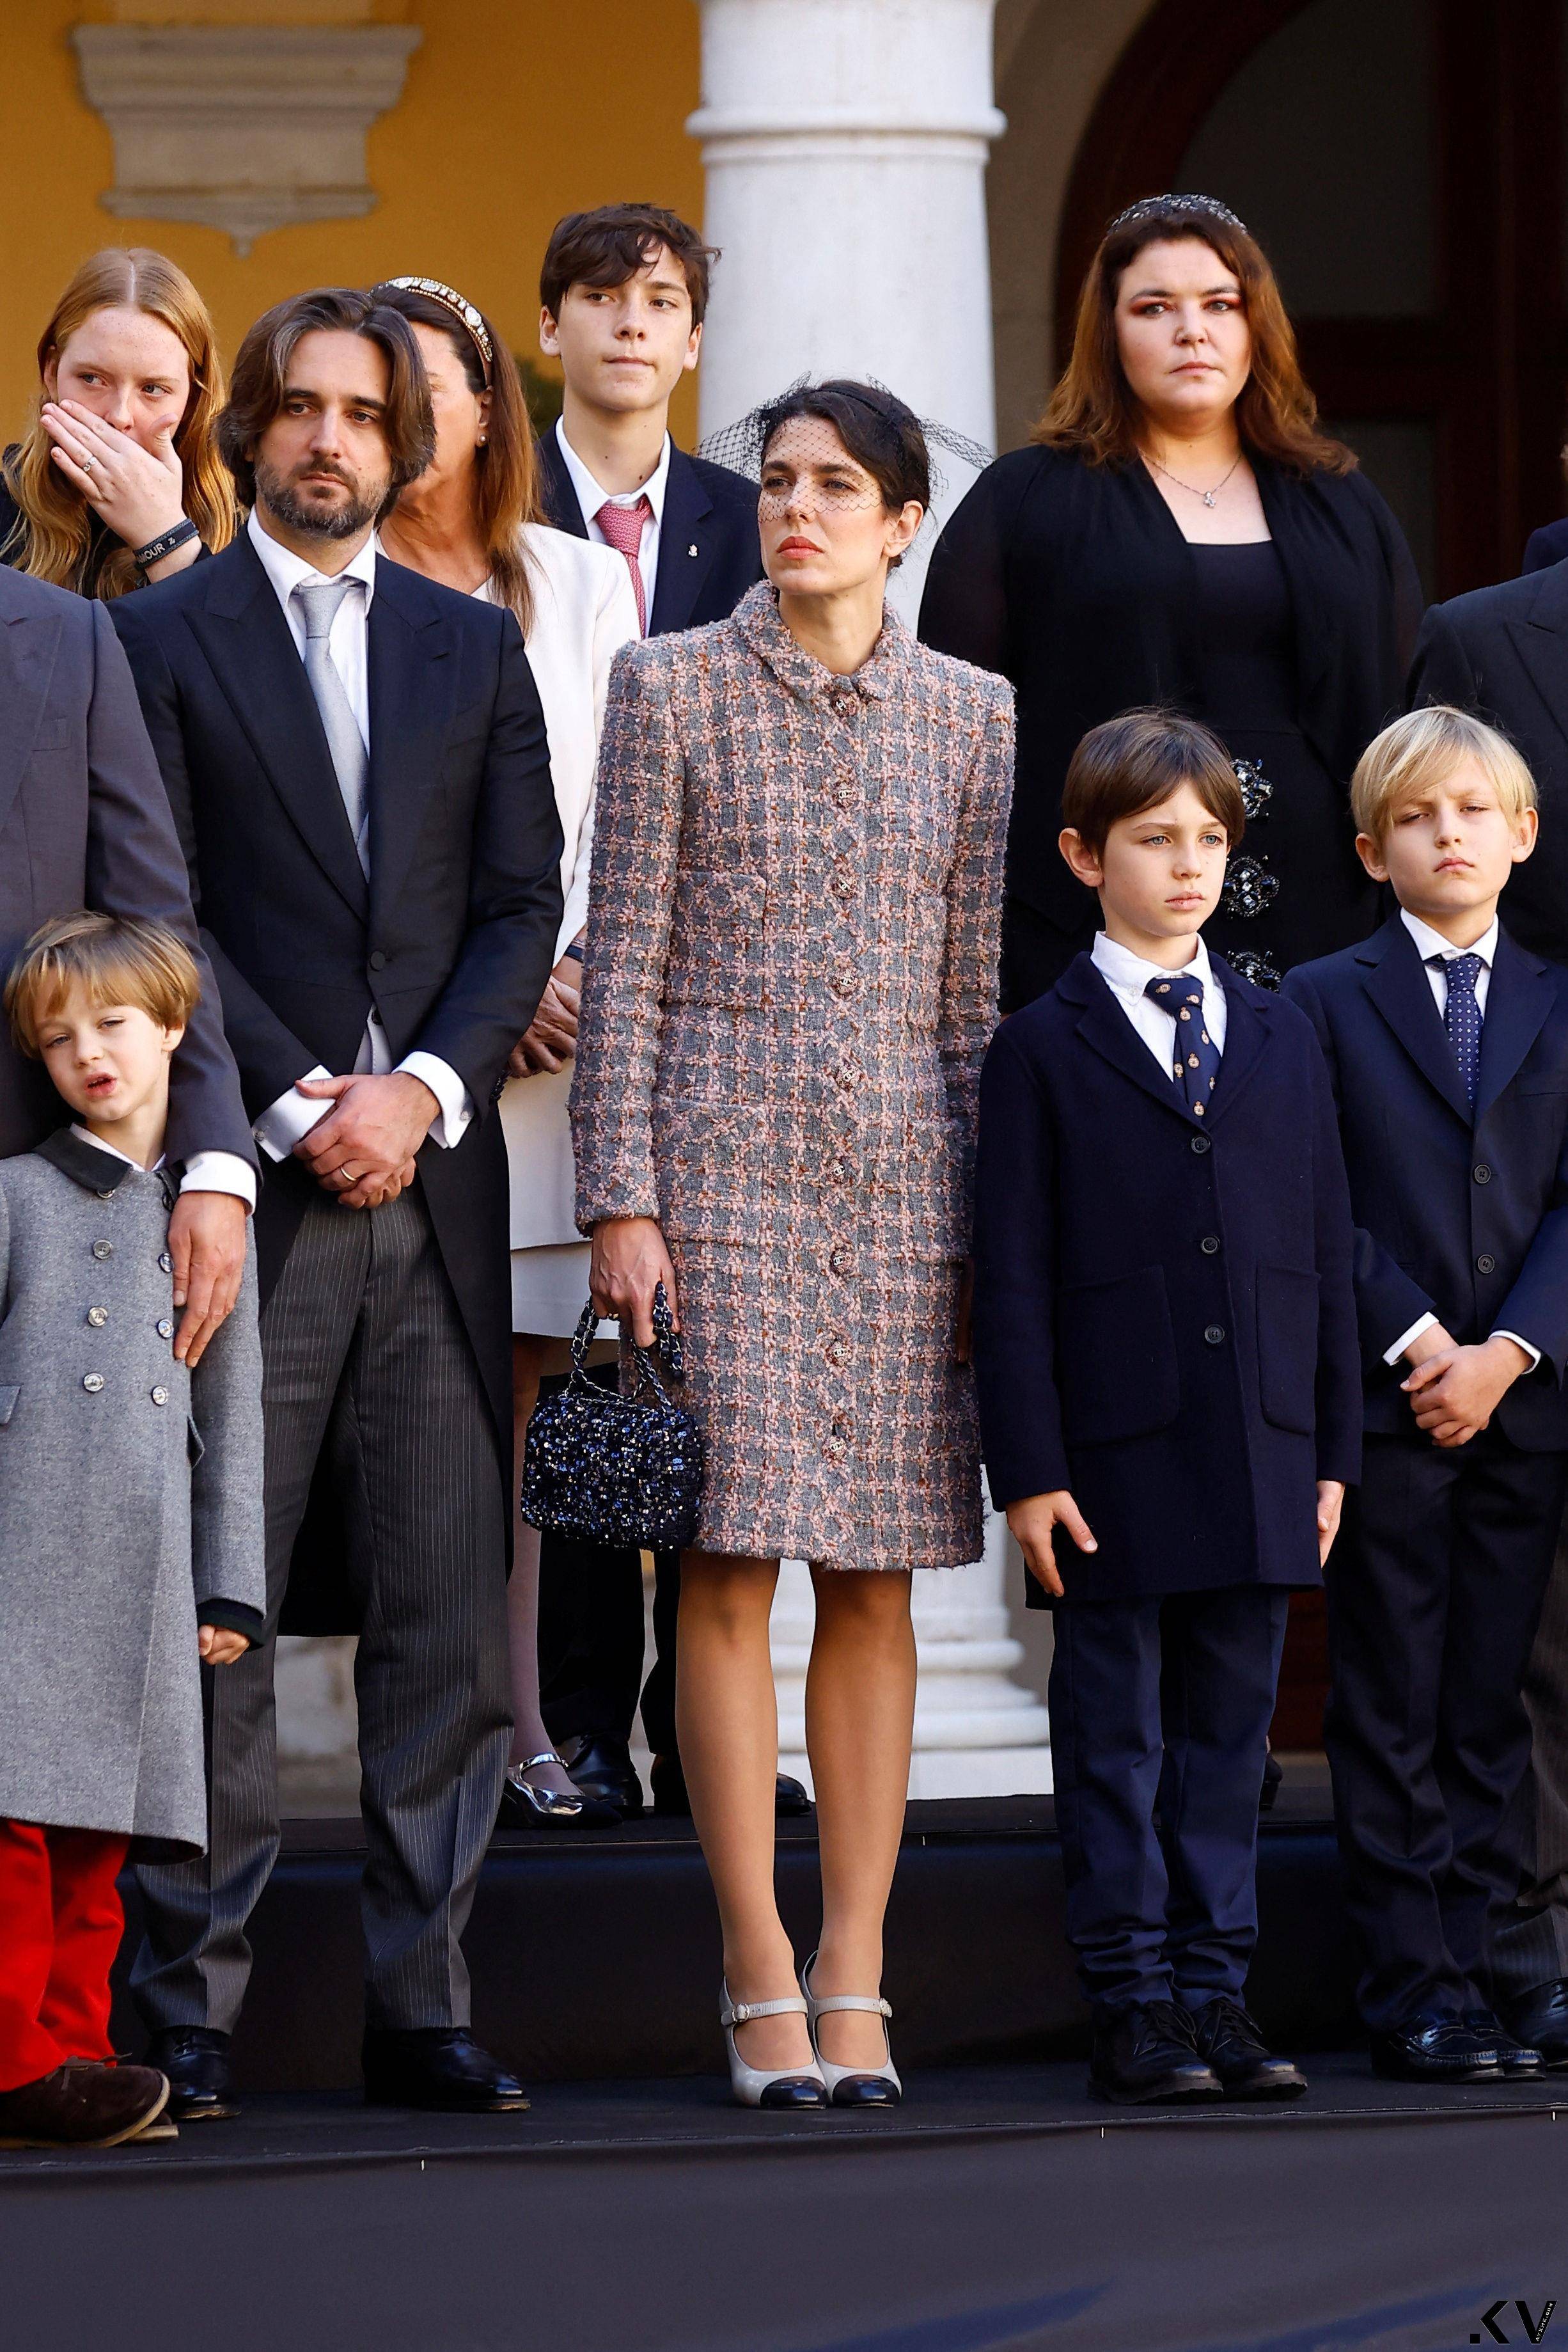 摩纳哥王室把香奈儿当制服穿　“最美王子妃”Dior红装突围 时尚穿搭 图4张